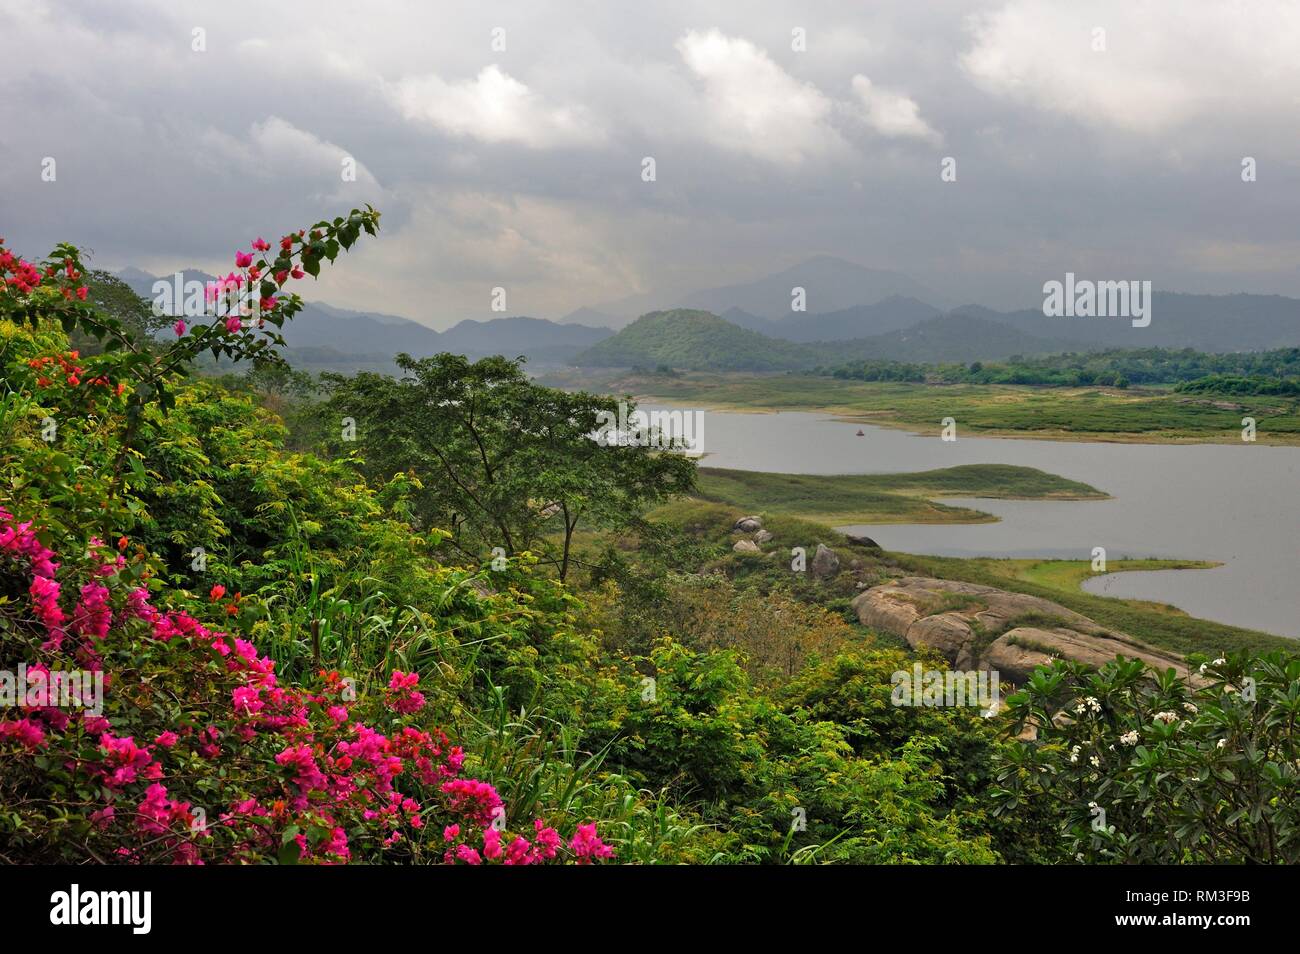 Sri Lanka, subcontinente indio, Asia meridional. Foto de stock